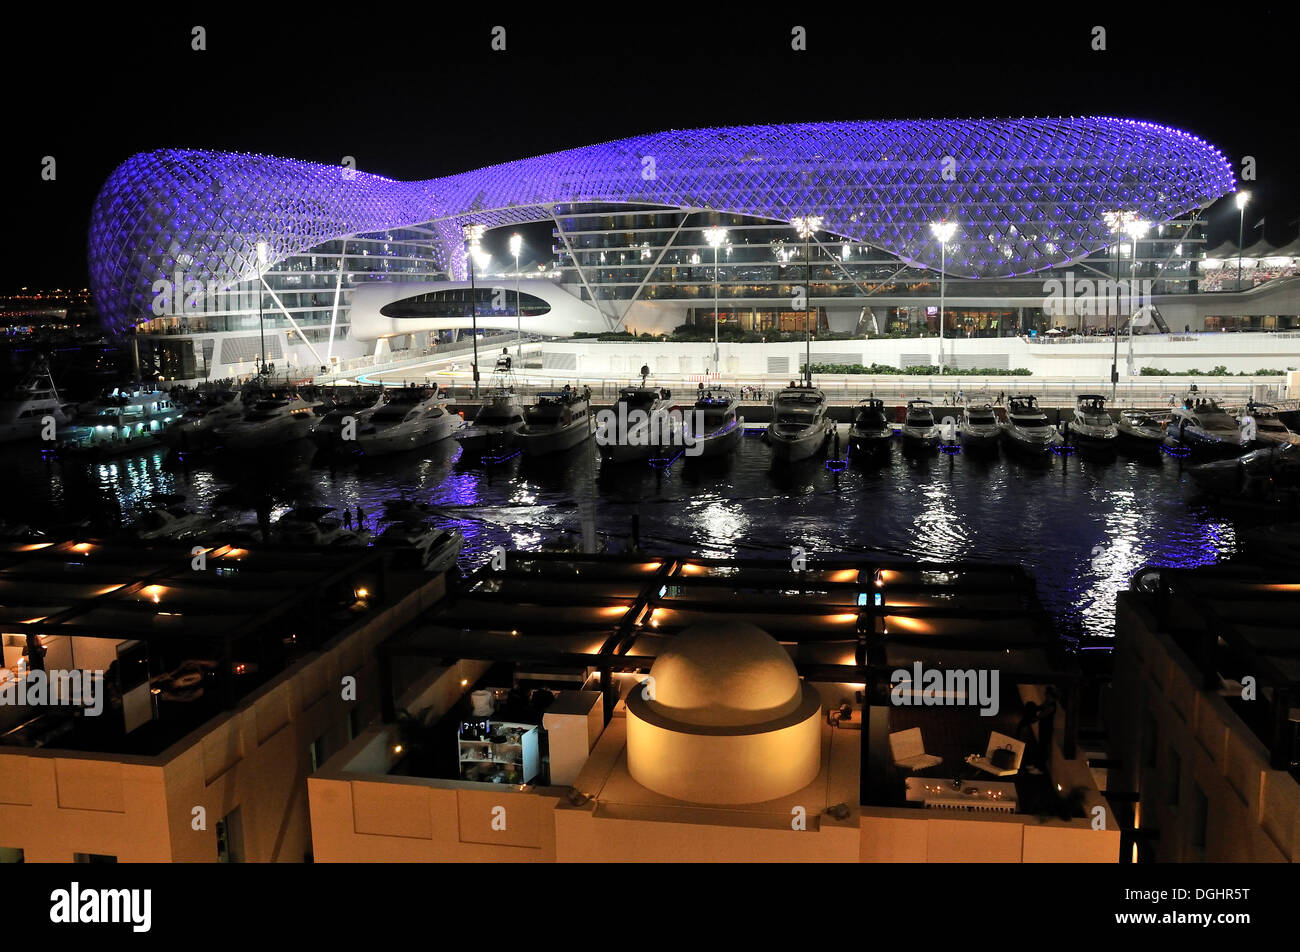 Yas Hotel and marina at the Formula One racetrack Yas Marina Circuit on Yas Island at night, Abu Dhabi, United Arab Emirates Stock Photo